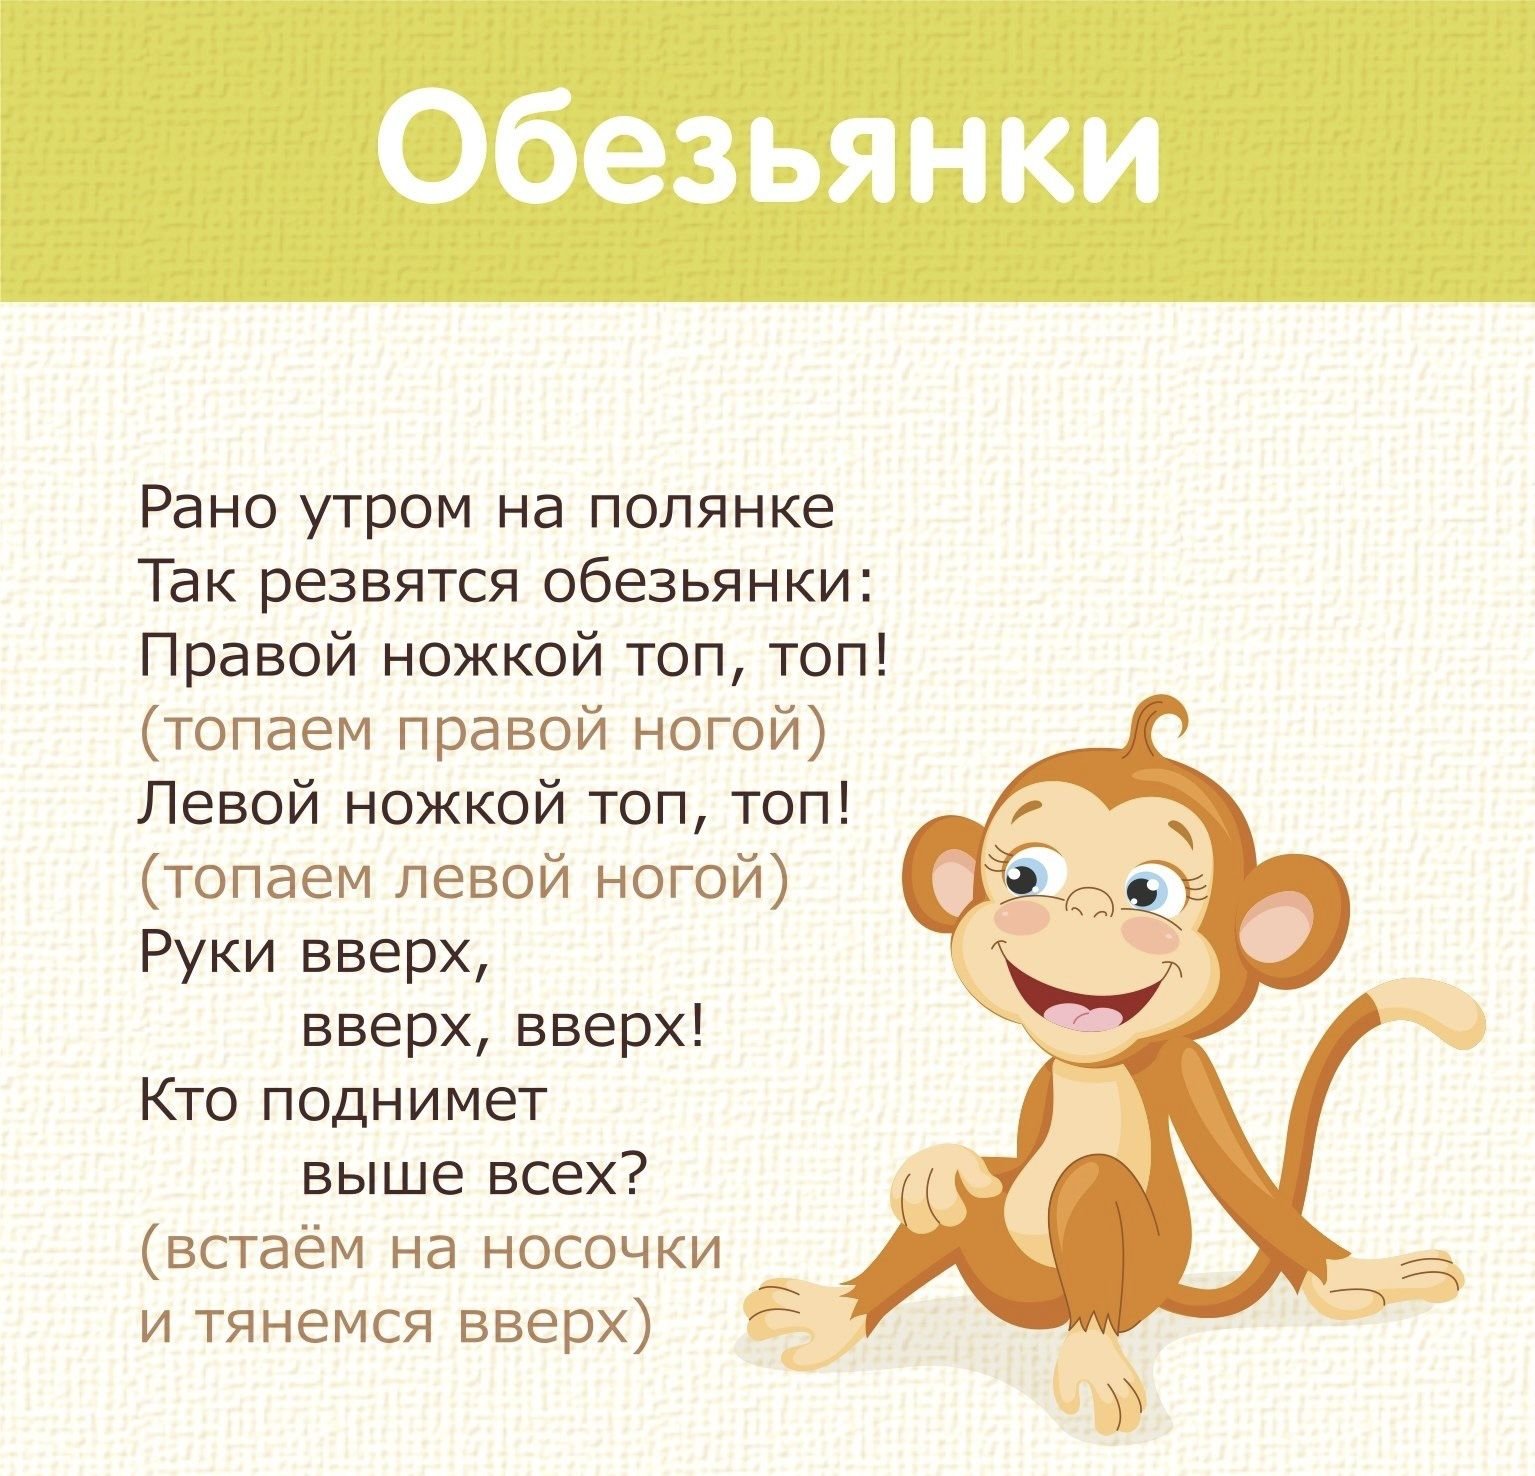 Топ топ топает малыш слова песни. Рано утром на полянке так резвятся обезьянки. Стихи про обезьянку для детей. Физкультминутка про Льва. Детская подвижная игра - обезьянки.